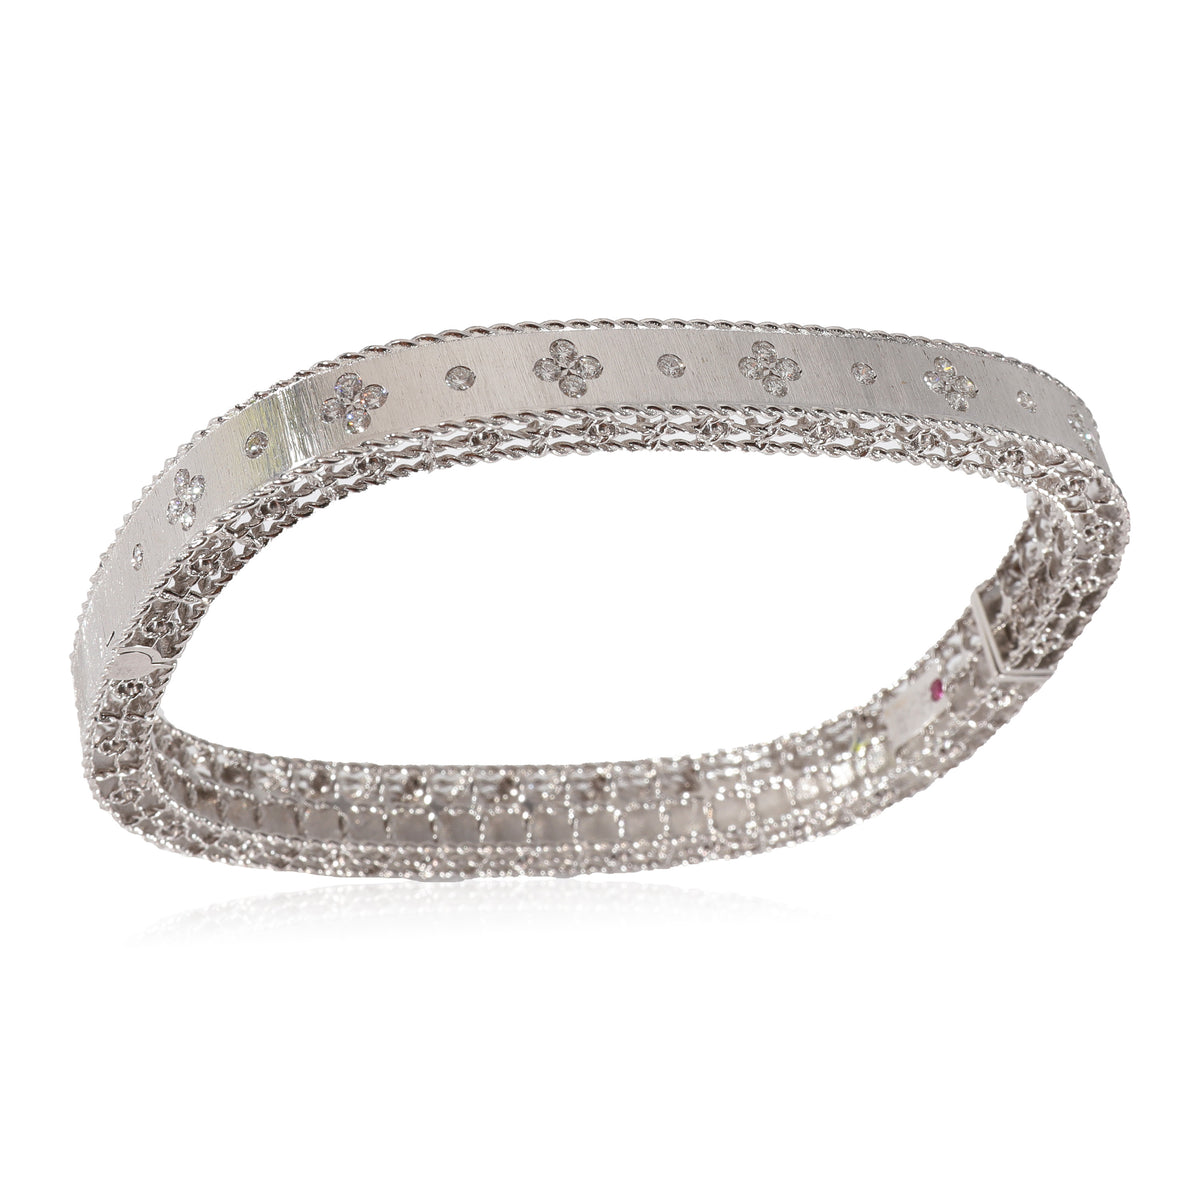 Roberto Coin Princess Diamond Bracelet in 18k White Gold 0.48 CTW